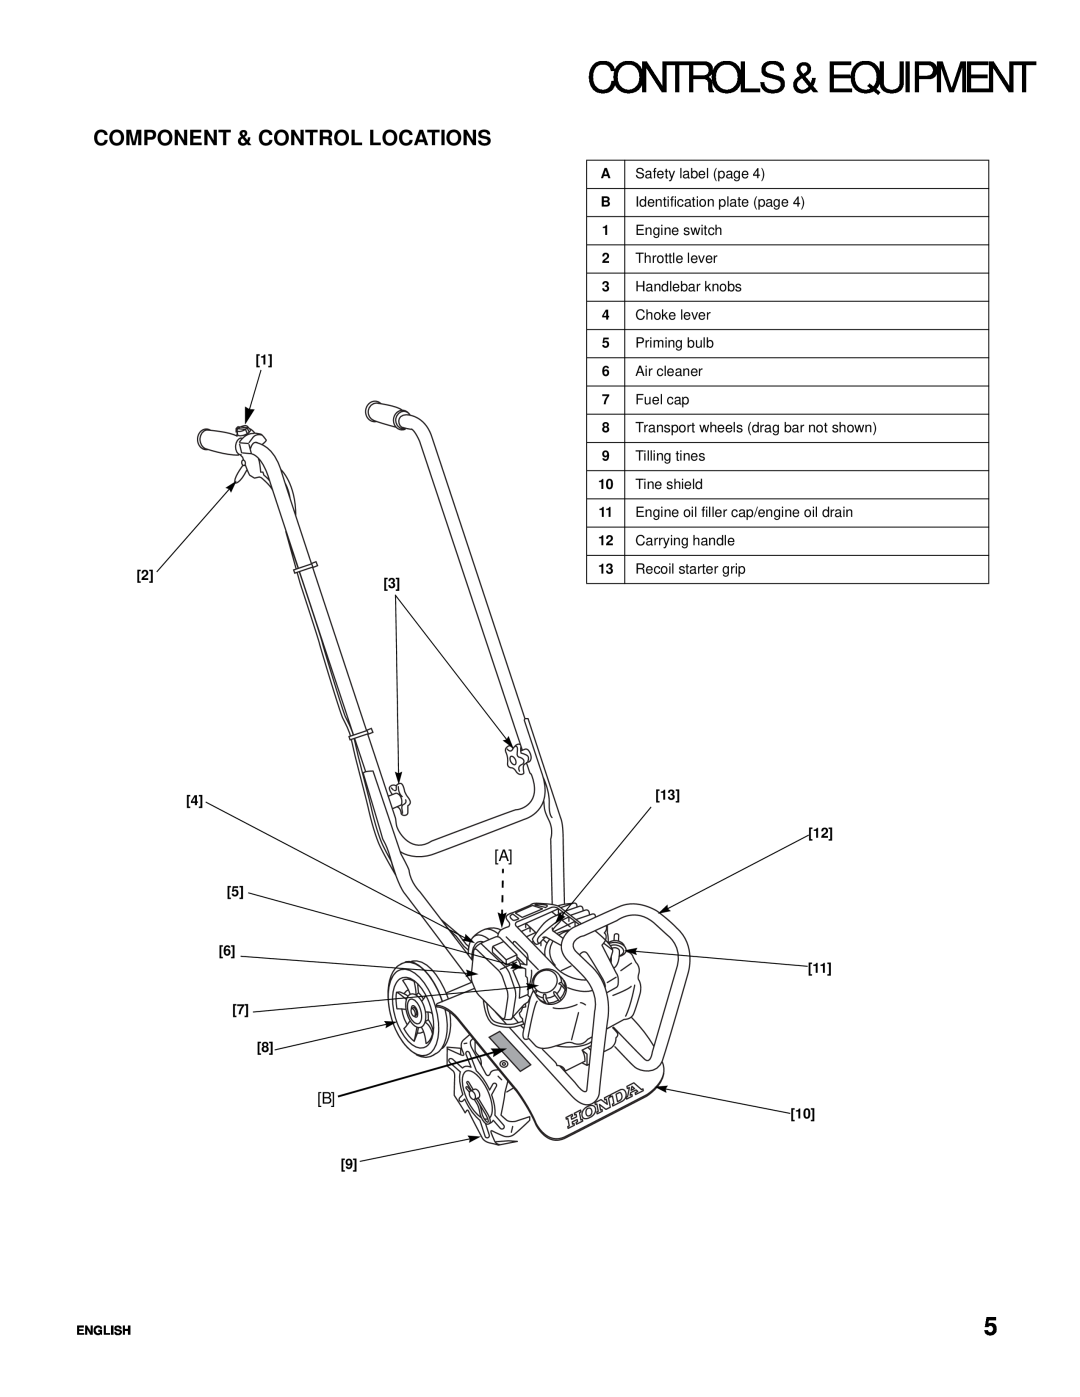 Honda Power Equipment Honda Mini-Tiller, FG110 specifications Controls & Equipment, Component & Control Locations 